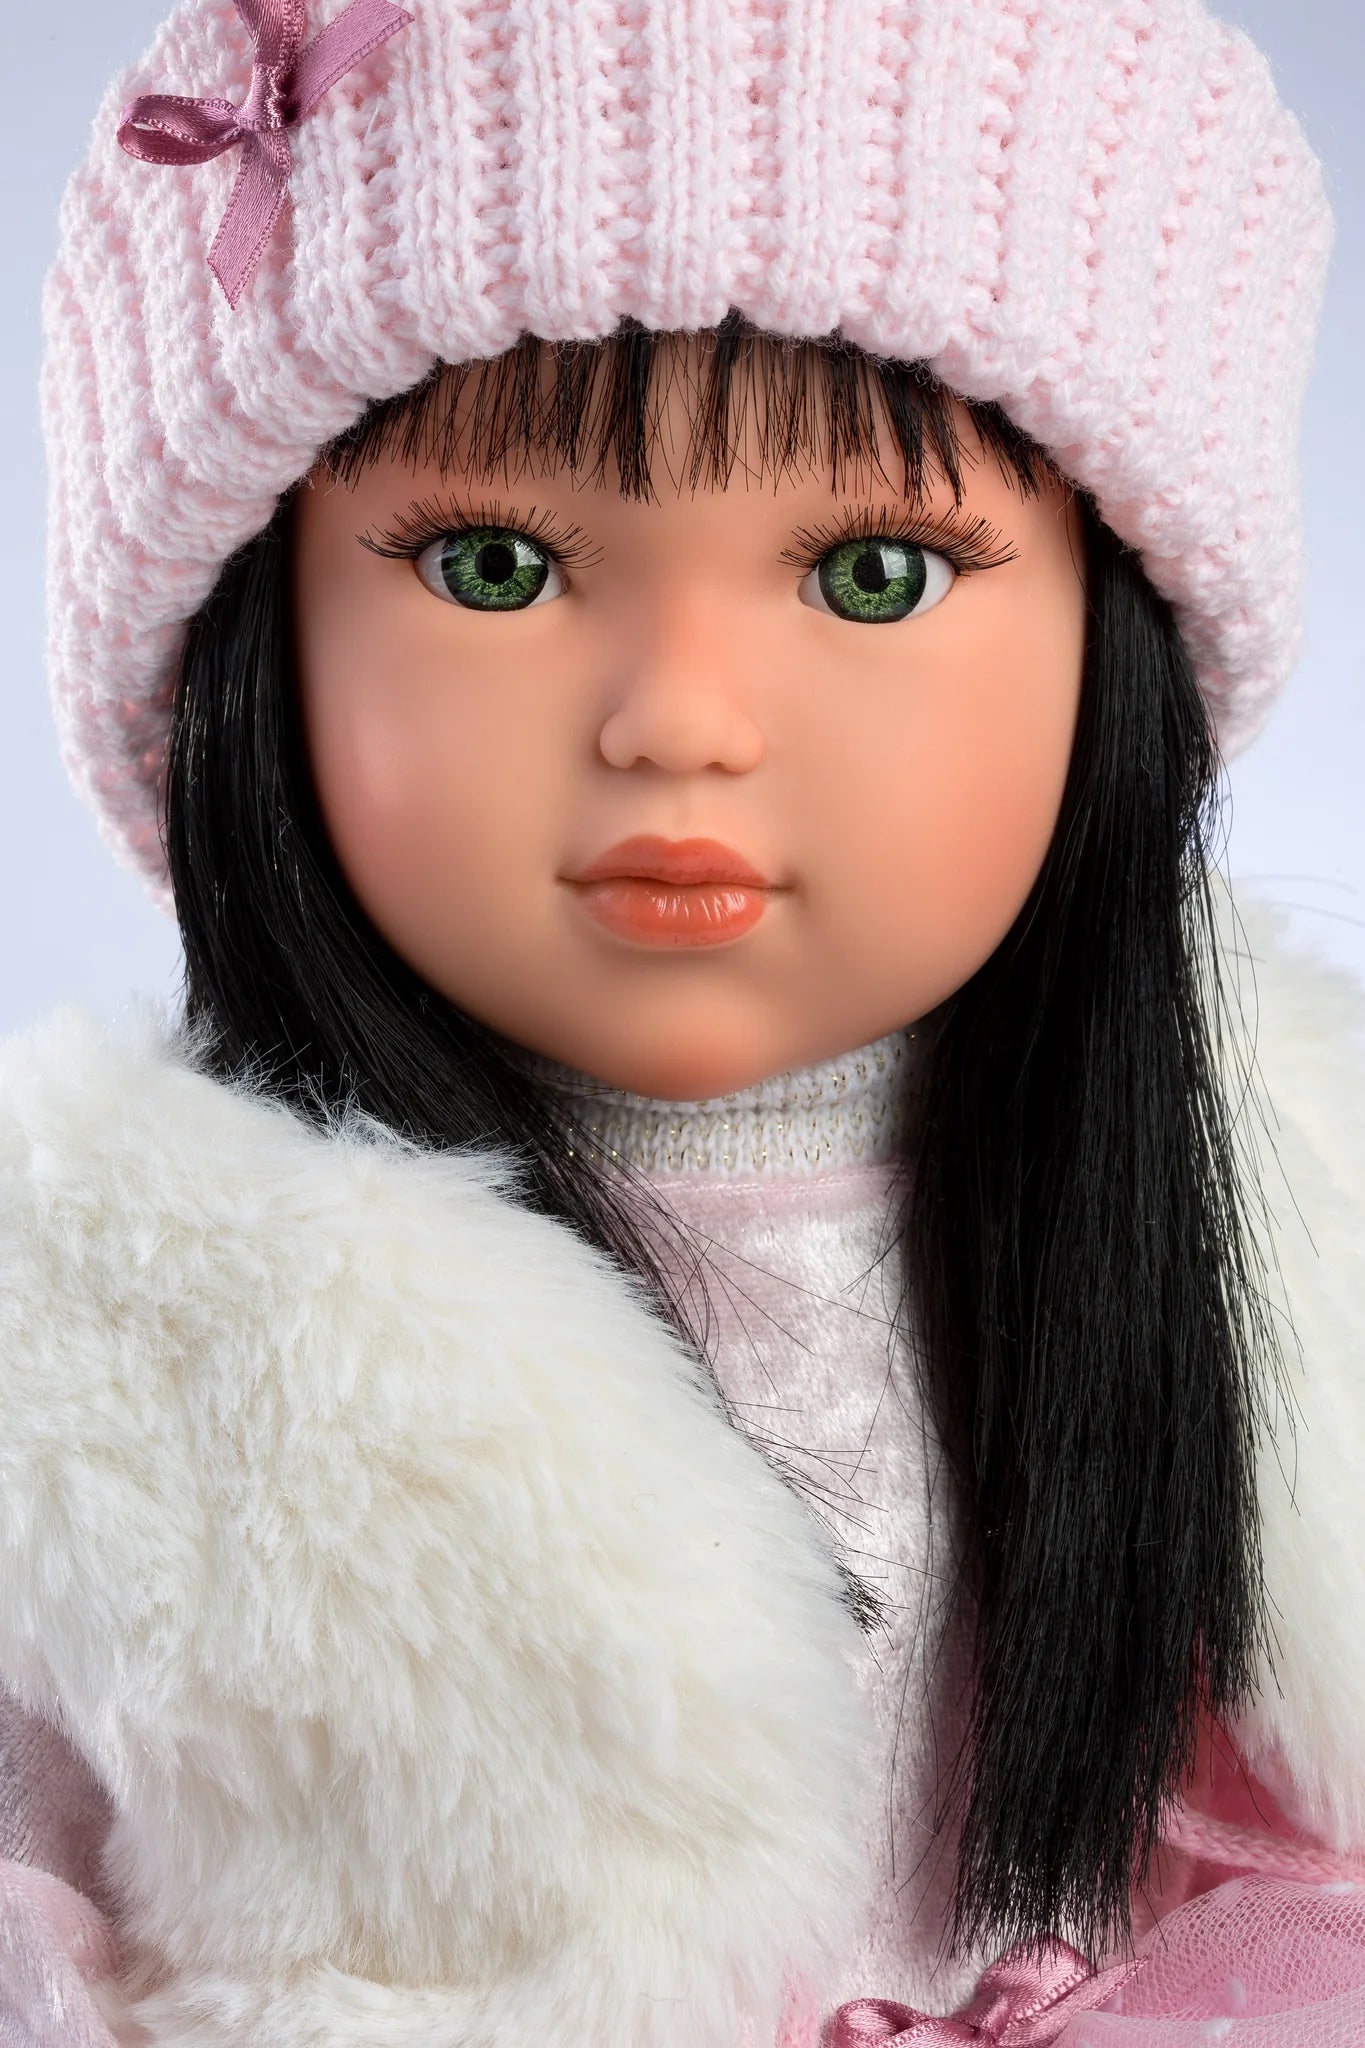 Articulated Soft Body Fashion Doll Greta 15.8